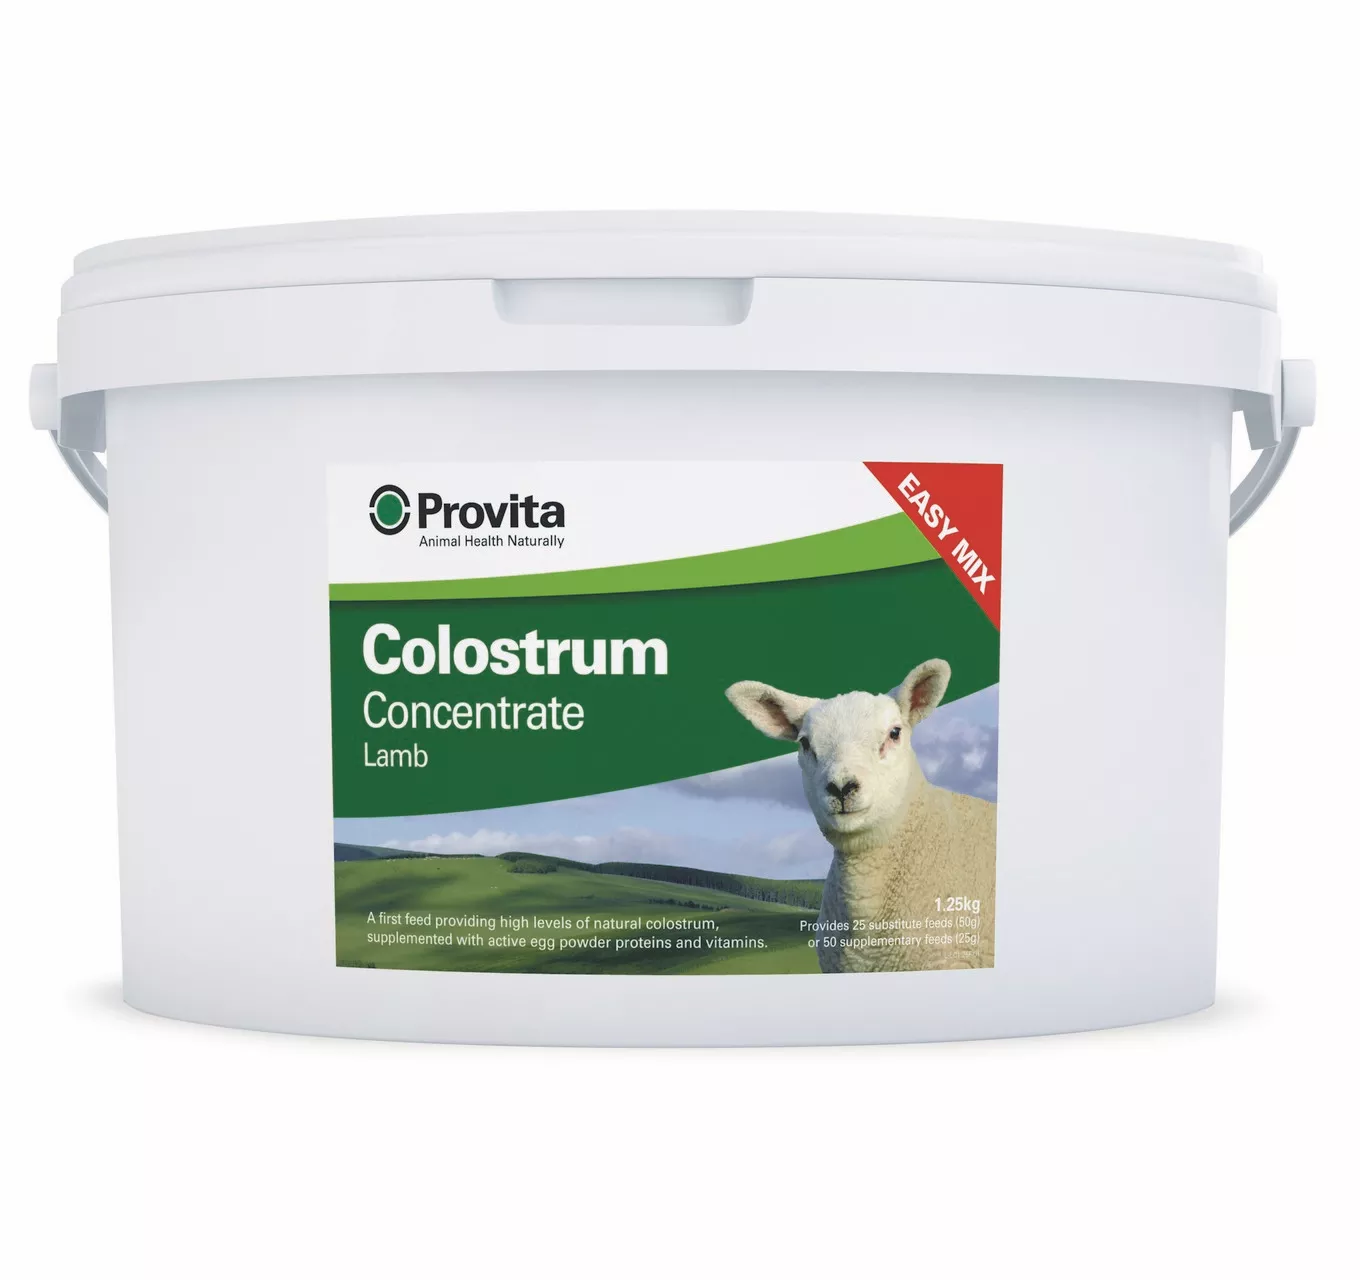 Provita Lamb Colostrum Concentrate 1.25kg